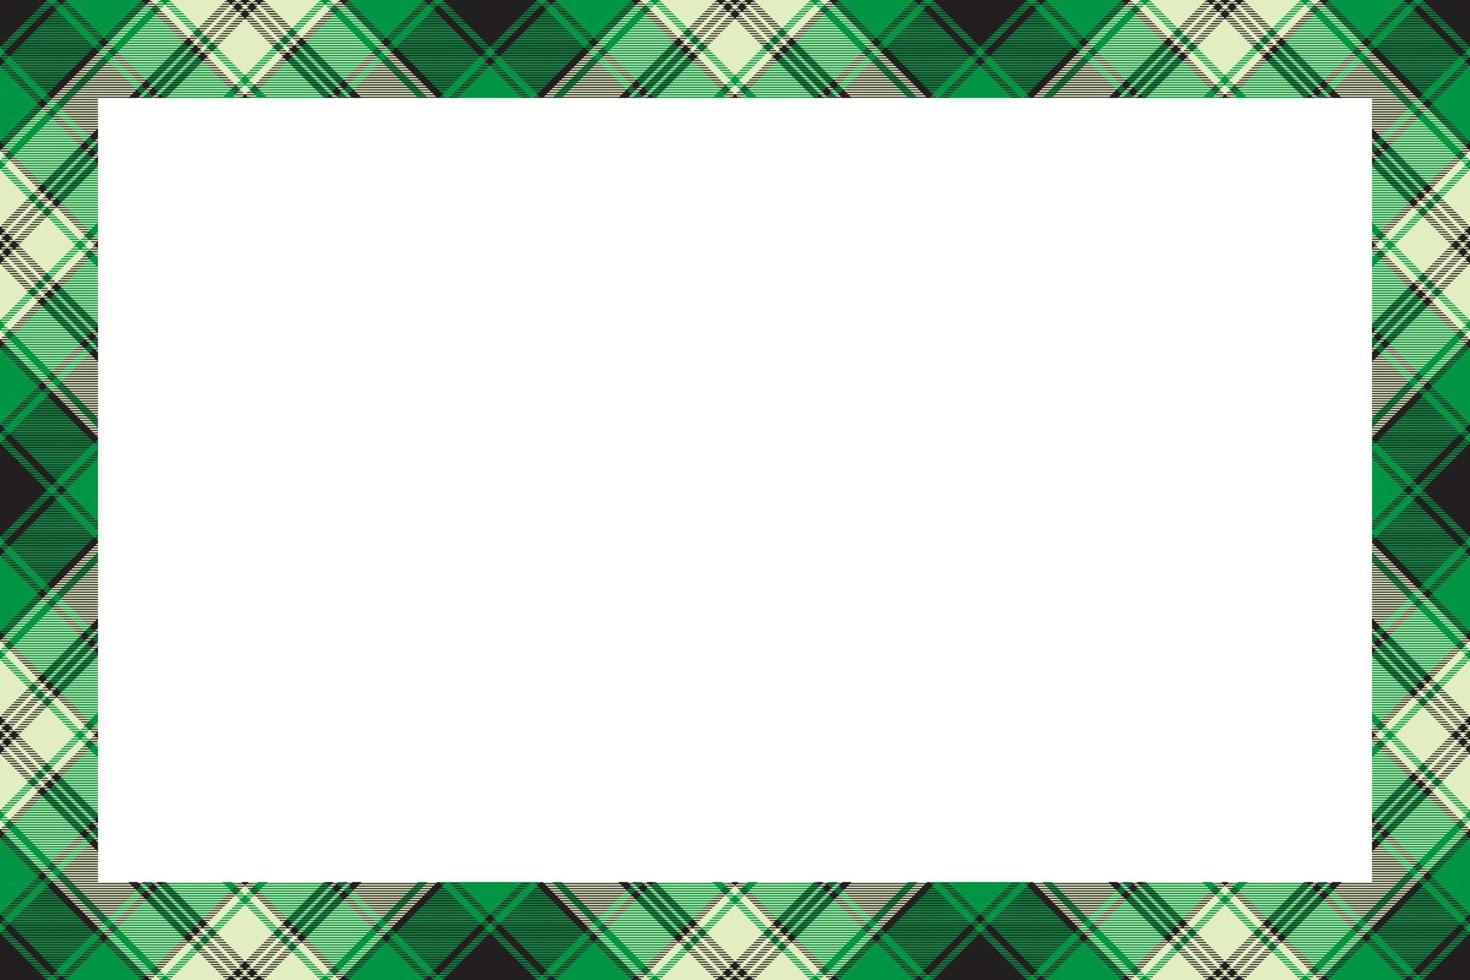 bordes rectangulares y marcos vectoriales. diseño de marco vintage geométrico de patrón de borde. textura de tela escocesa de tartán escocés. plantilla para tarjeta de regalo, collage, álbum de recortes o álbum de fotos y retrato. vector